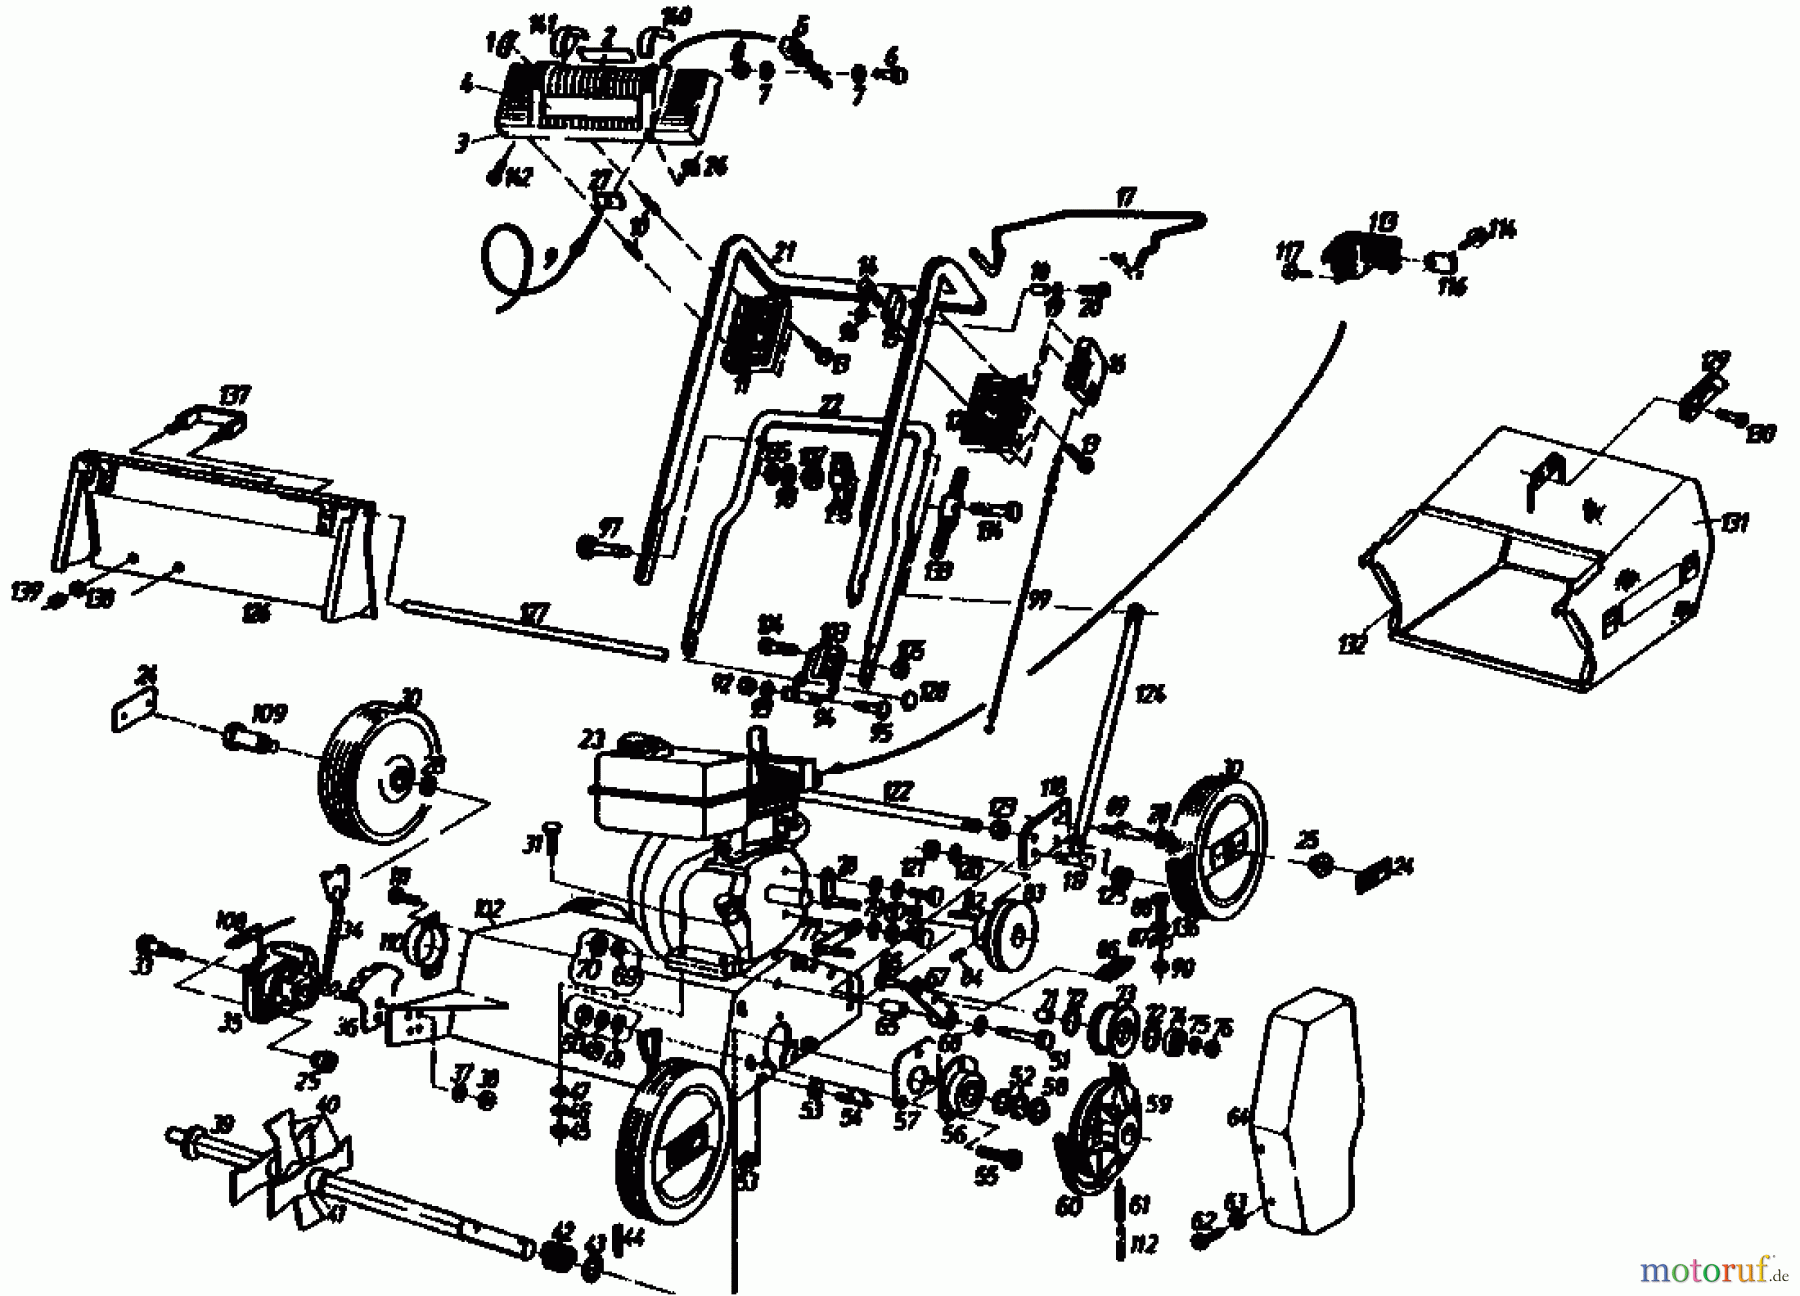  Gutbrod Motorvertikutierer MV 404 04010.01  (1991) Grundgerät